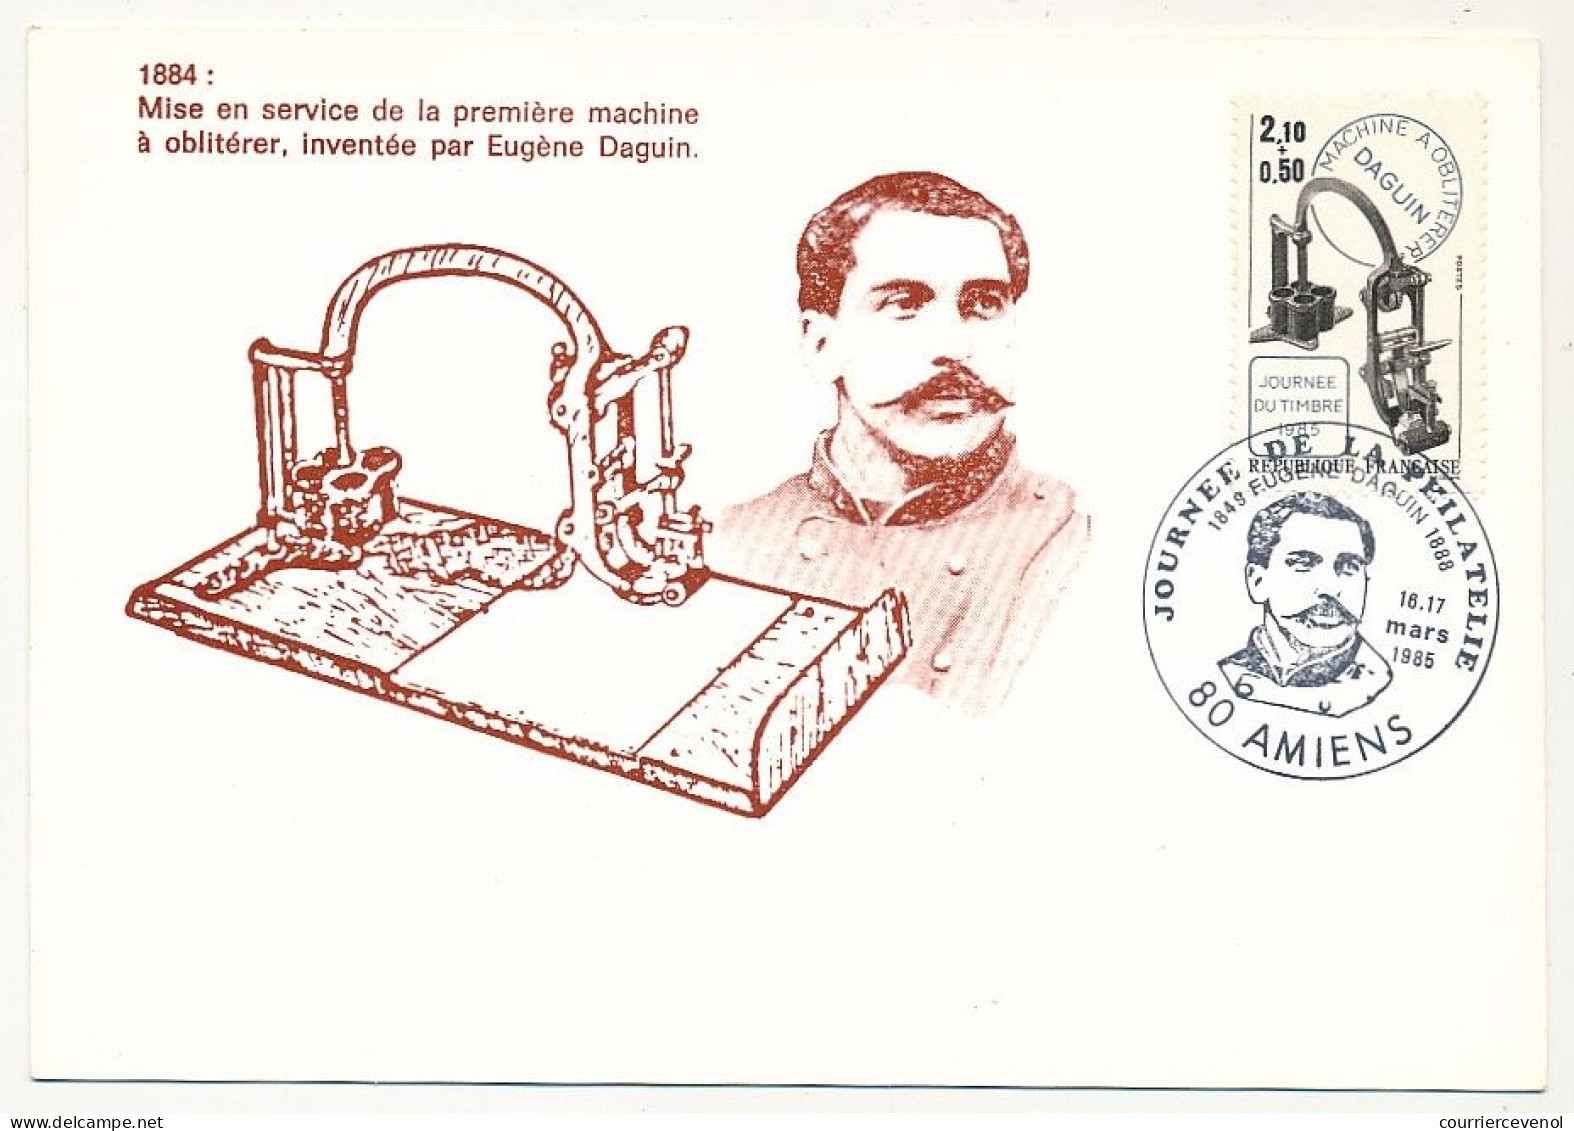 FRANCE => 80 - AMIENS - Carte Maximum "Journée De La Philatélie" 16/17 Mars 1985 - 2,10 + 0,50 Machine Daguin - Storia Postale